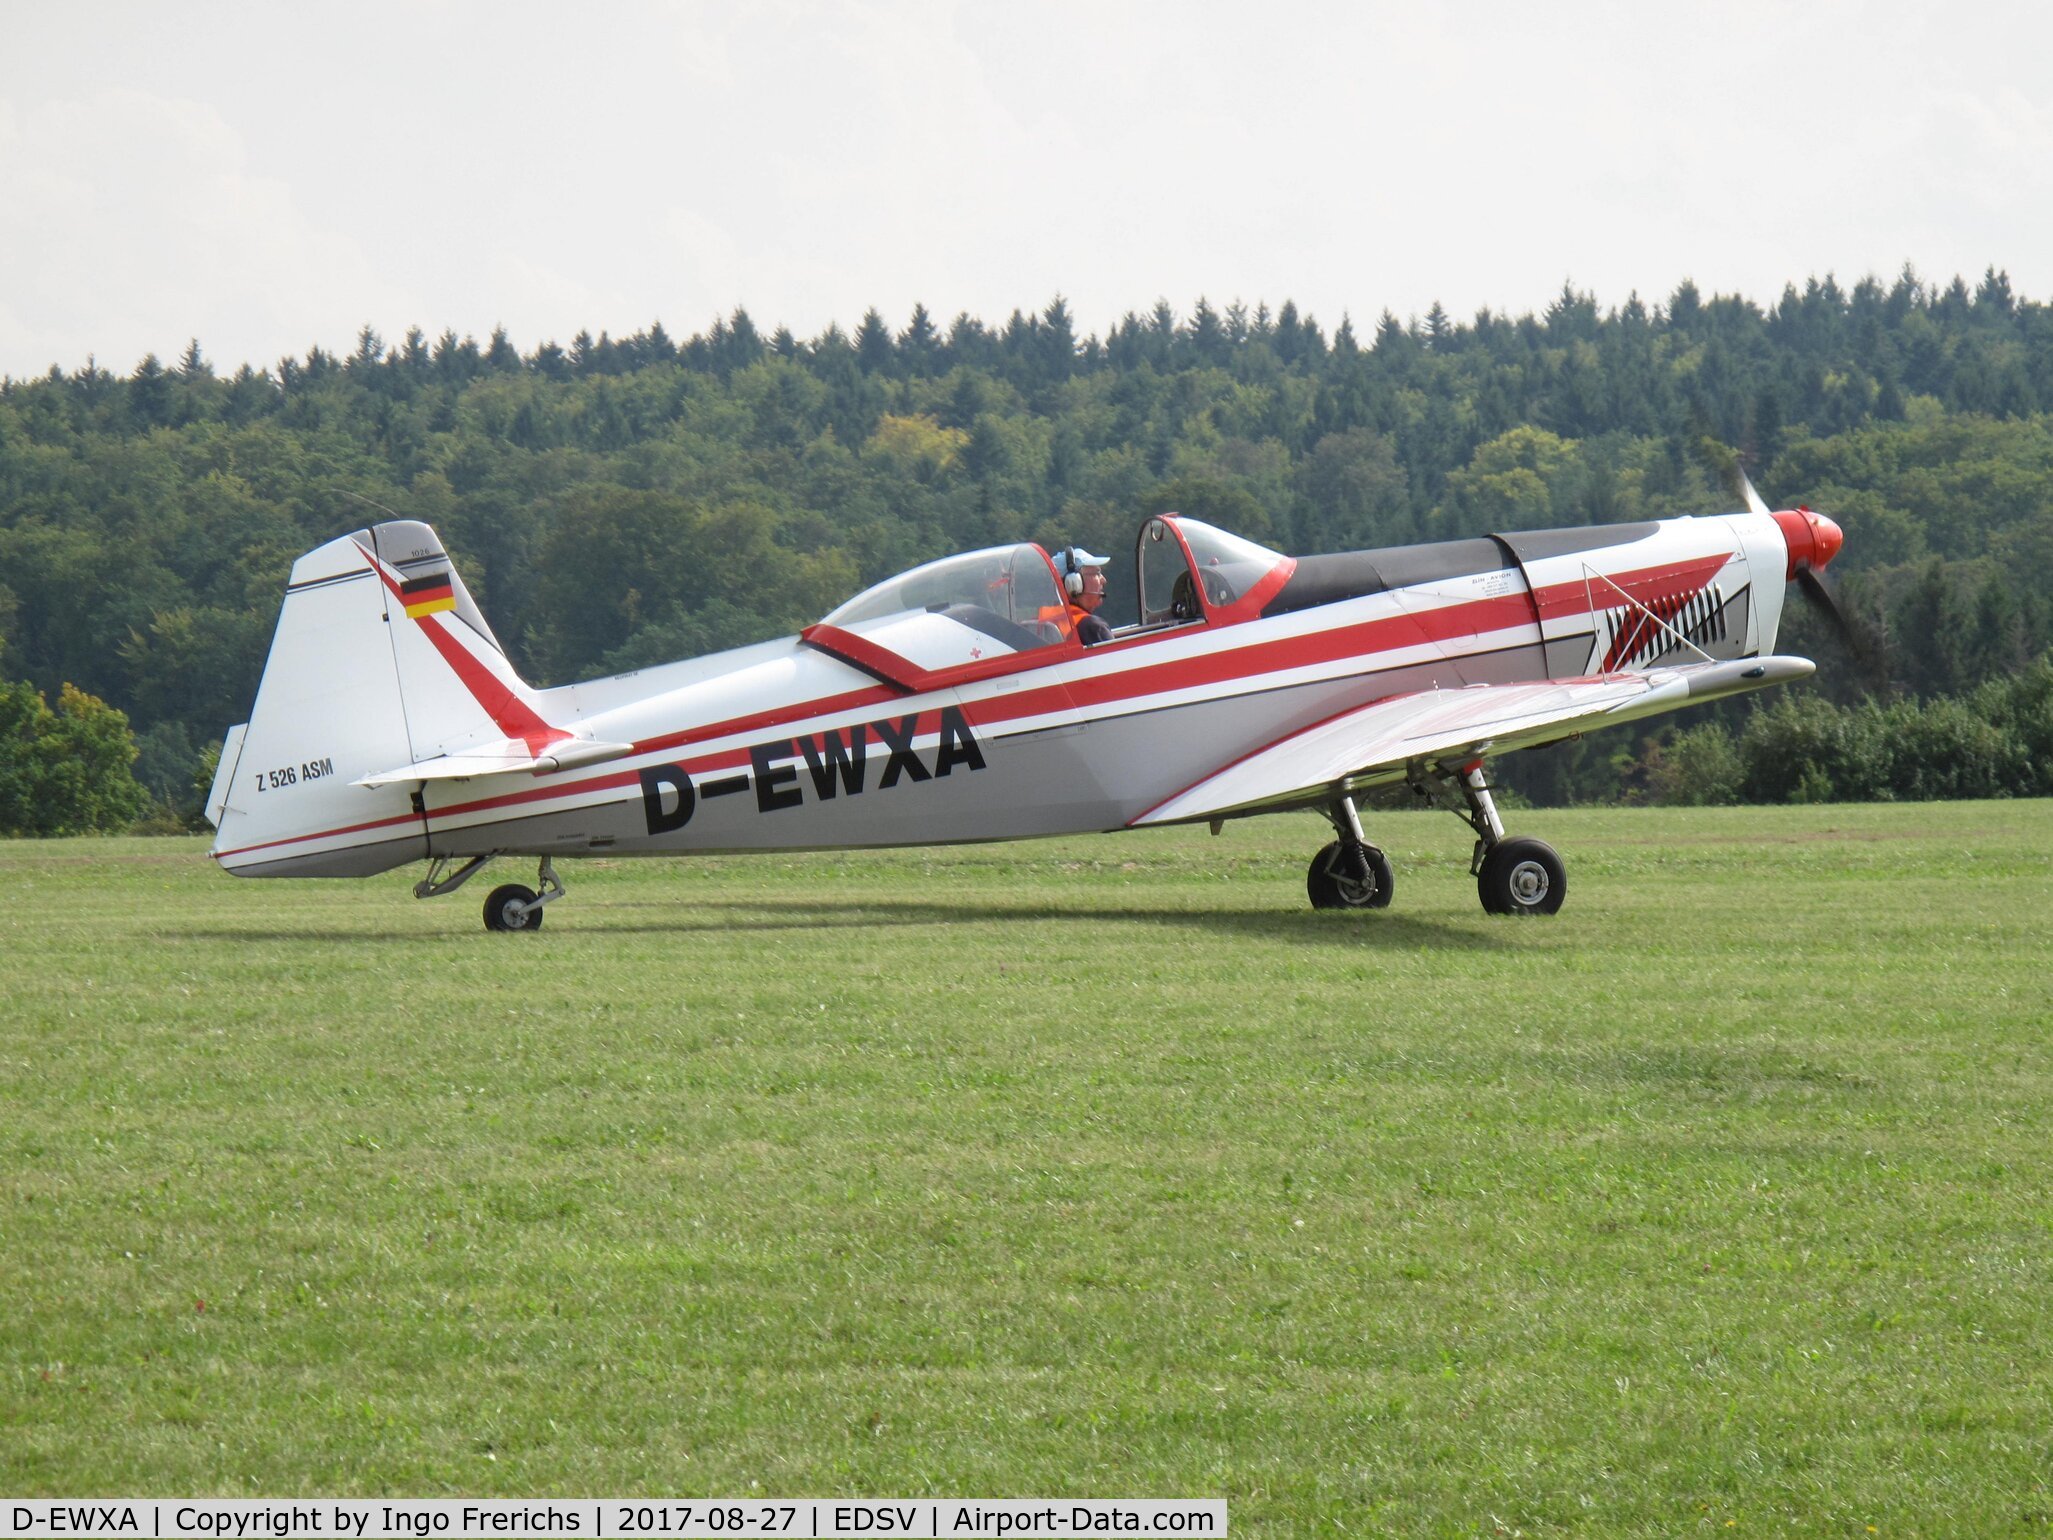 D-EWXA, Zlin Z-526ASM Akrobat C/N 1026, D-EWXA at glider airfield Waechtersberg (EDSV) in Wildberg in Germany.